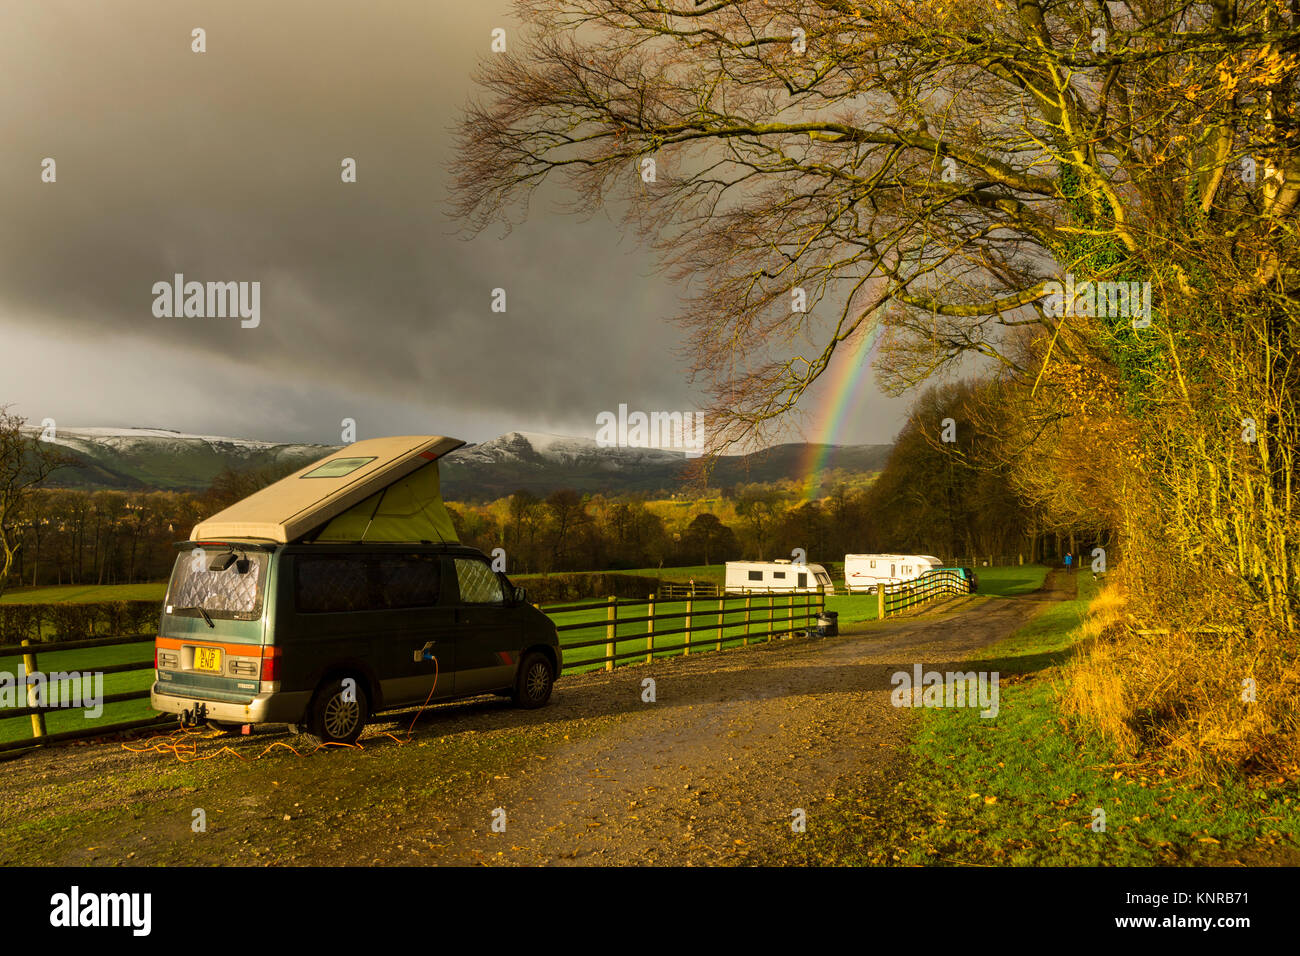 Ein Mazda Bongo Campervan in einem kleinen Wohnwagen im Fernfeld Bauernhof, in der Nähe von Dorf der Hoffnung, Peak District, Derbyshire, England, UK. Mam Tor in der Ferne. Stockfoto